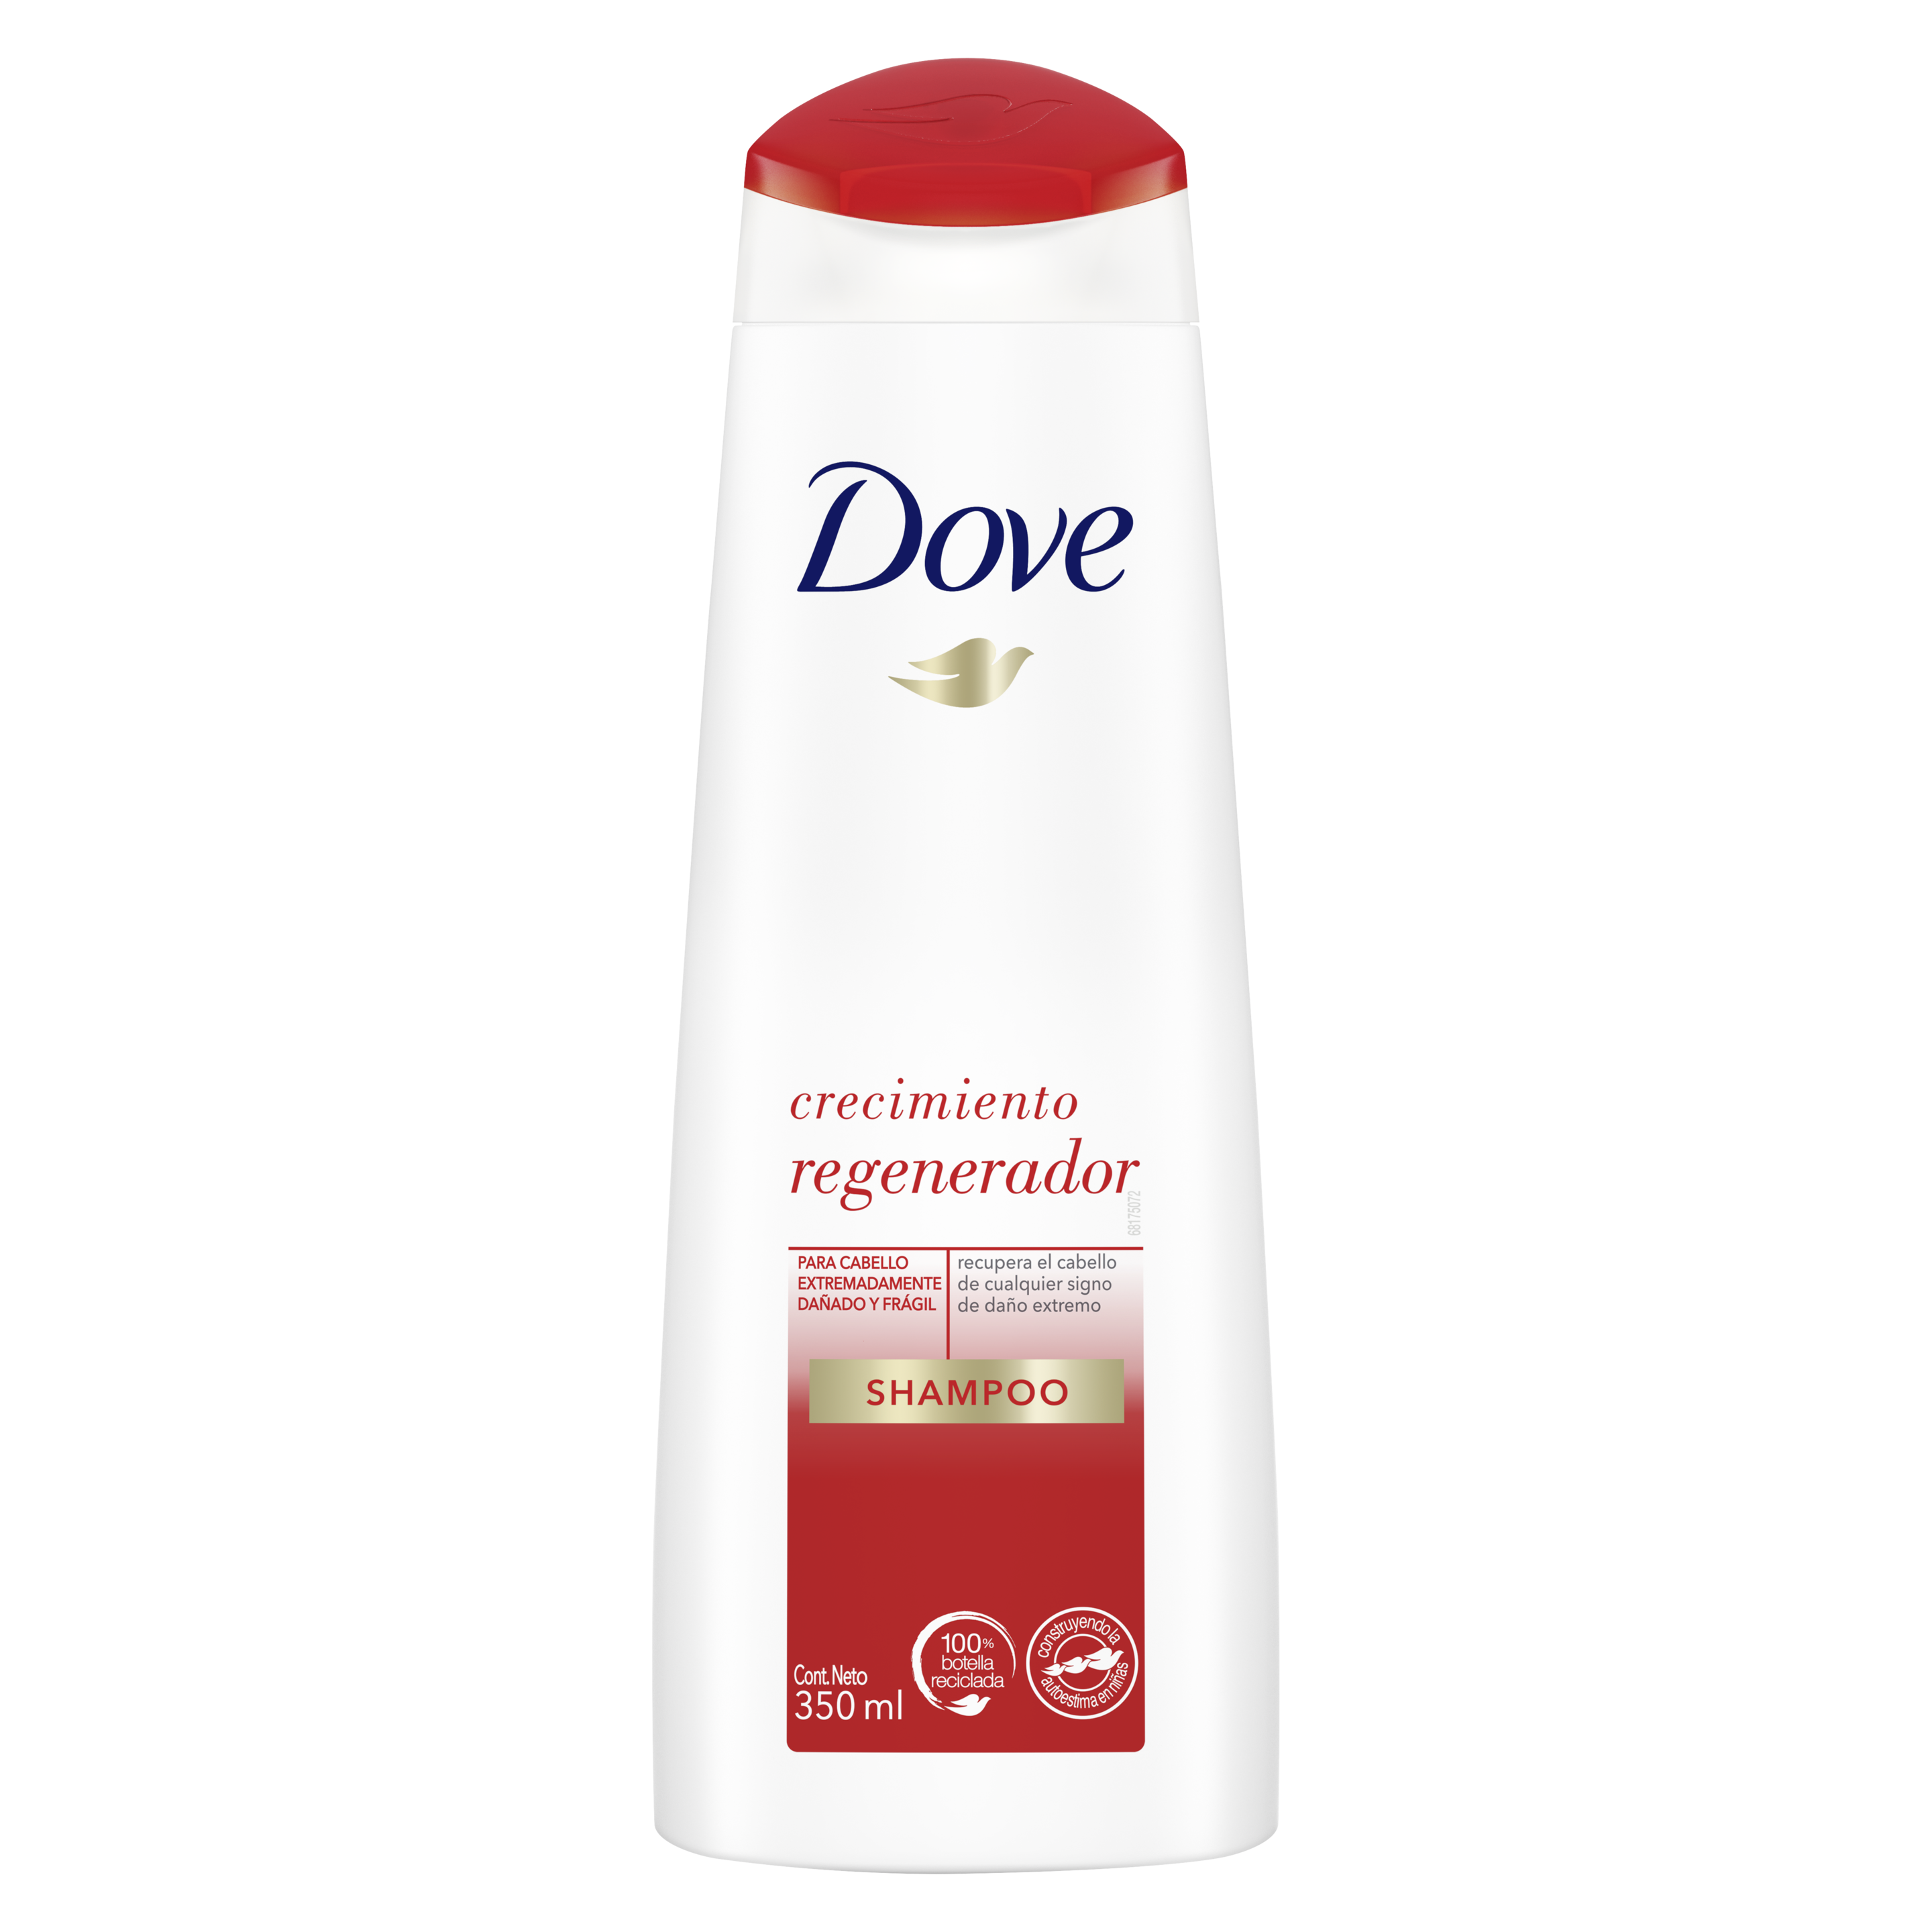 Shampoo Dove Shampoo Crecimiento Regenerador 350ml